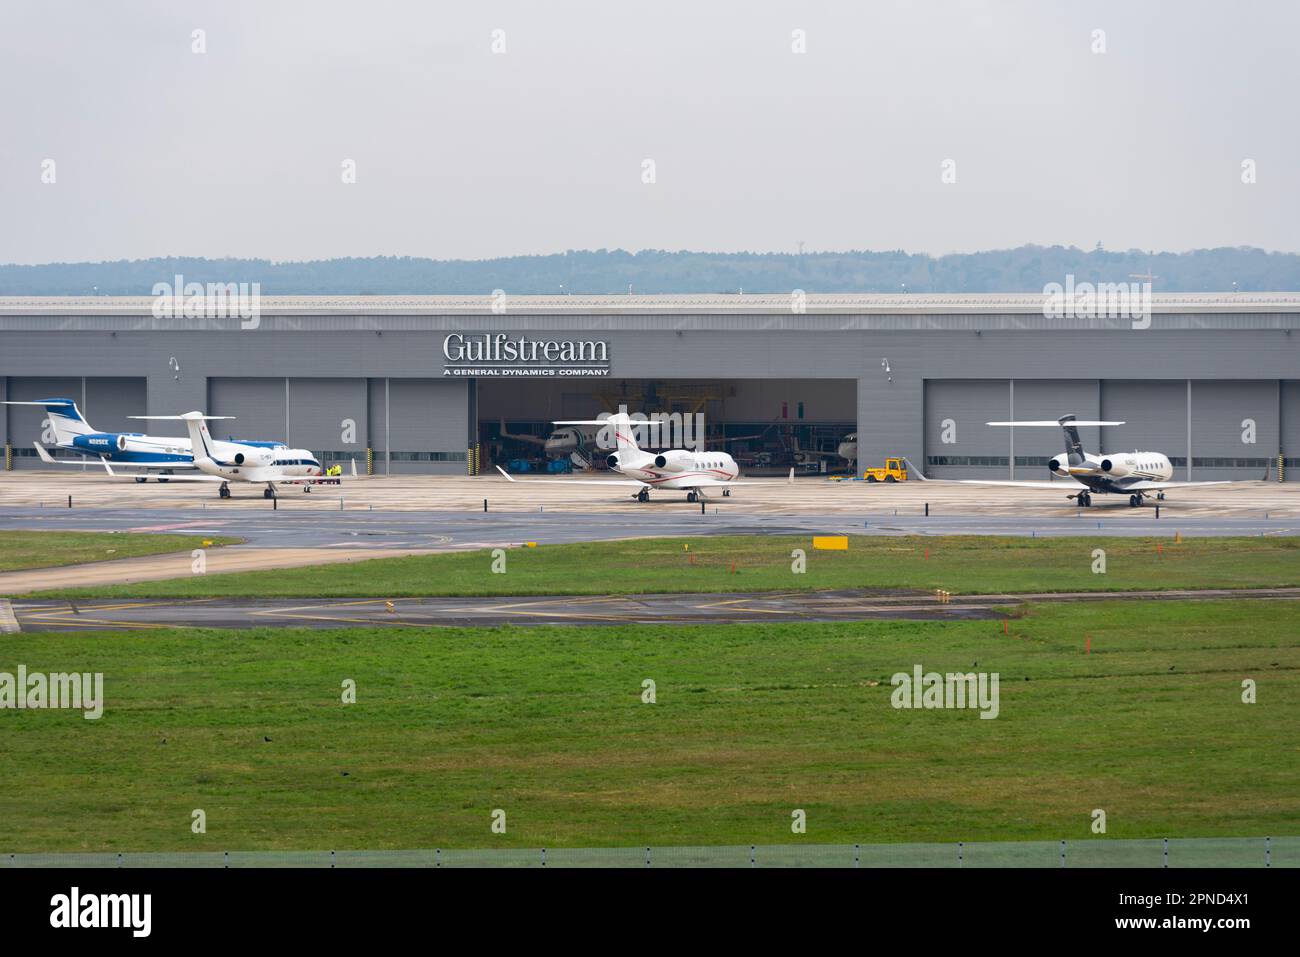 Gulfstream MRO Hangar, aeroporto di Farnborough, Hampshire, Regno Unito. Getti privati parcheggiati all'esterno. Manutenzione, riparazione e operazioni hangar di VolkerFitzpatrick Foto Stock